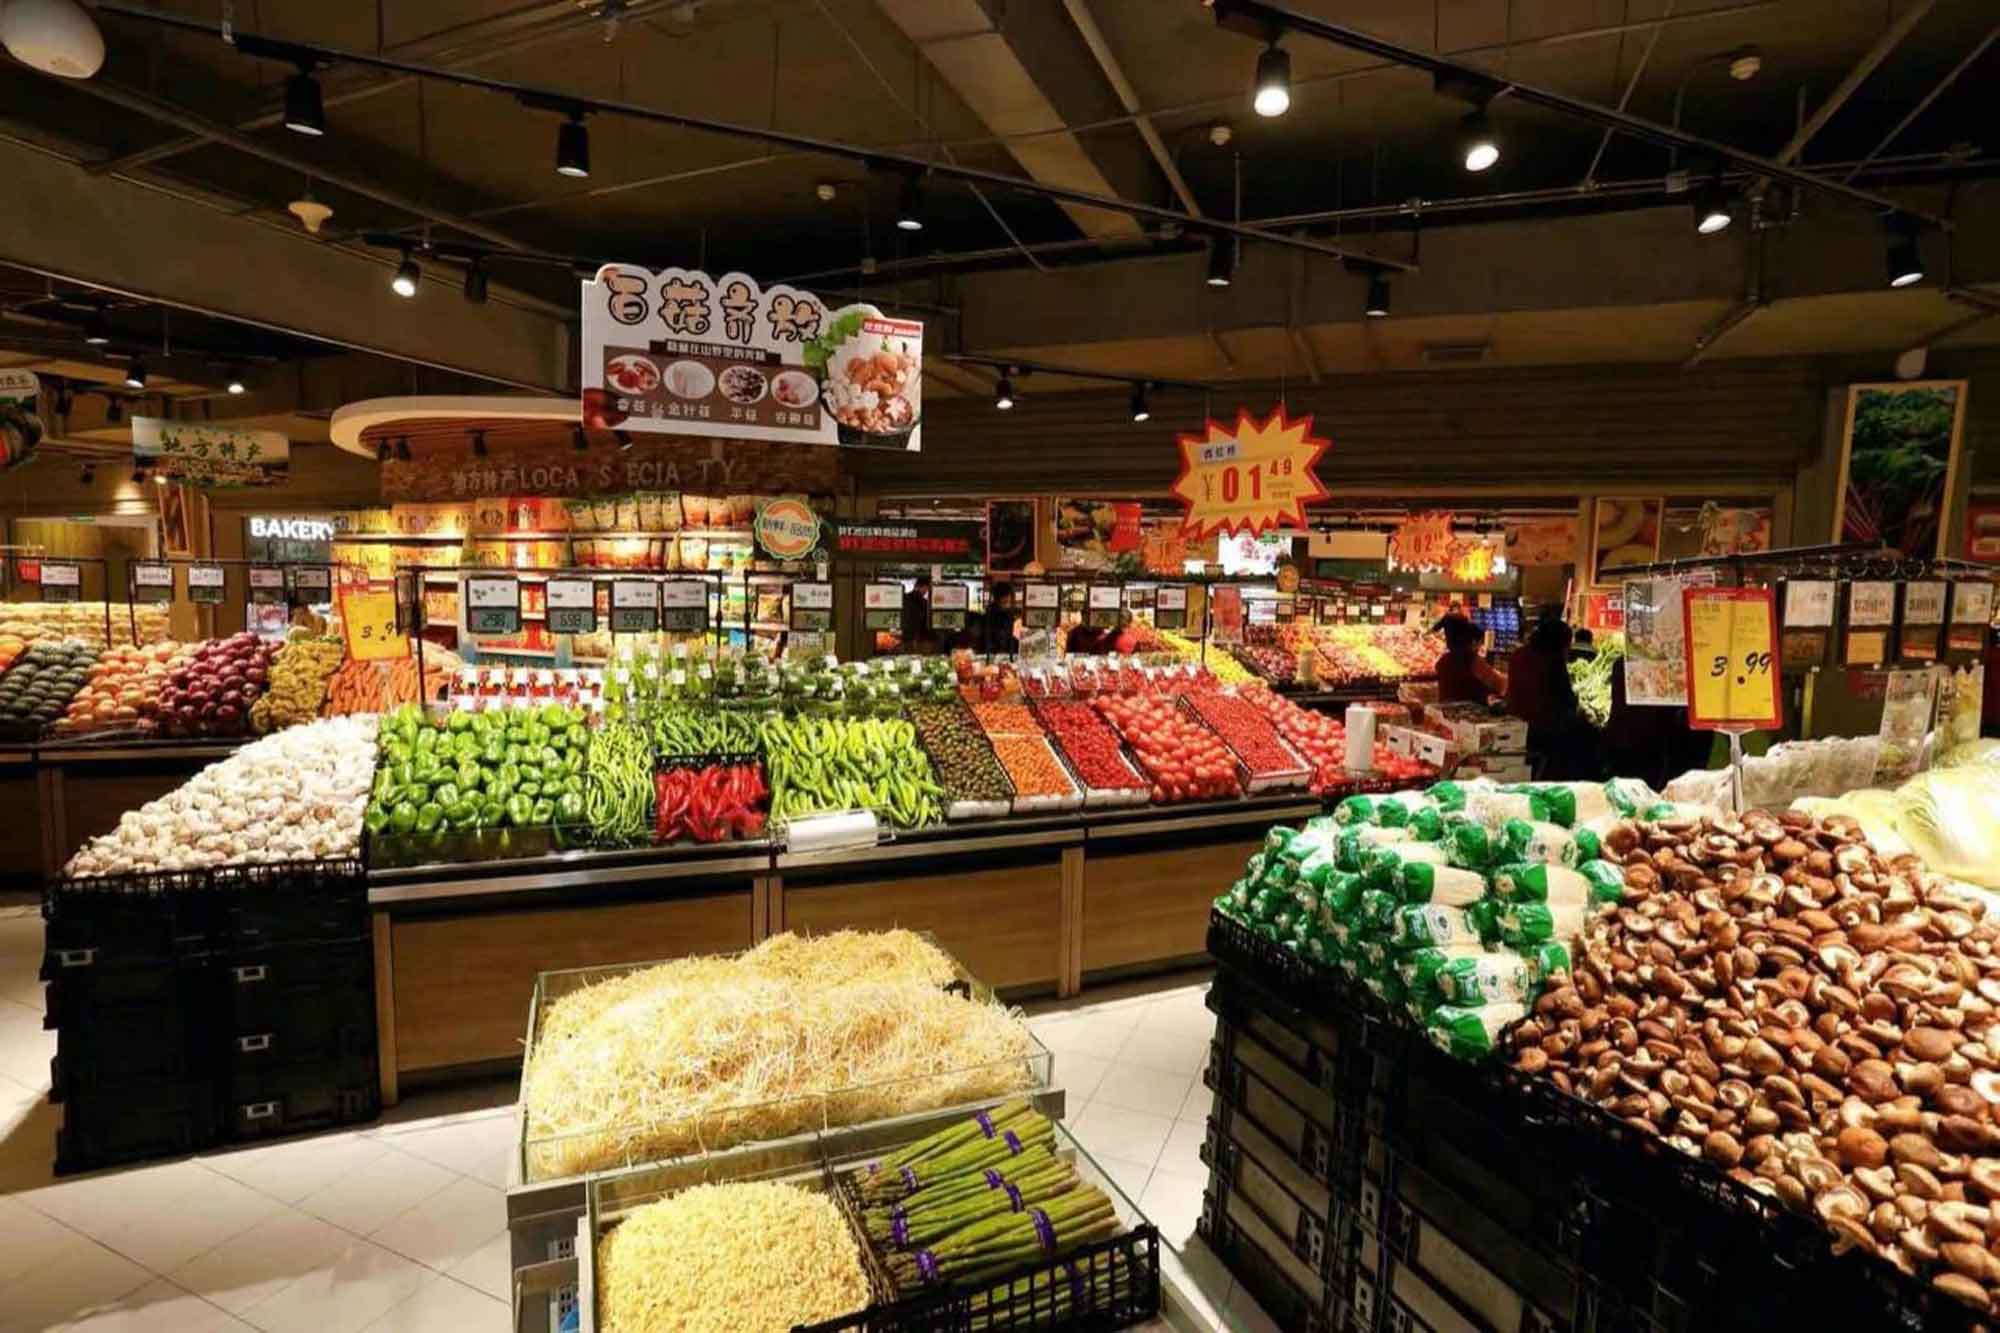 超市经营面积4000多平米,生鲜区是最大亮点,全国各地的水果蔬菜应有尽